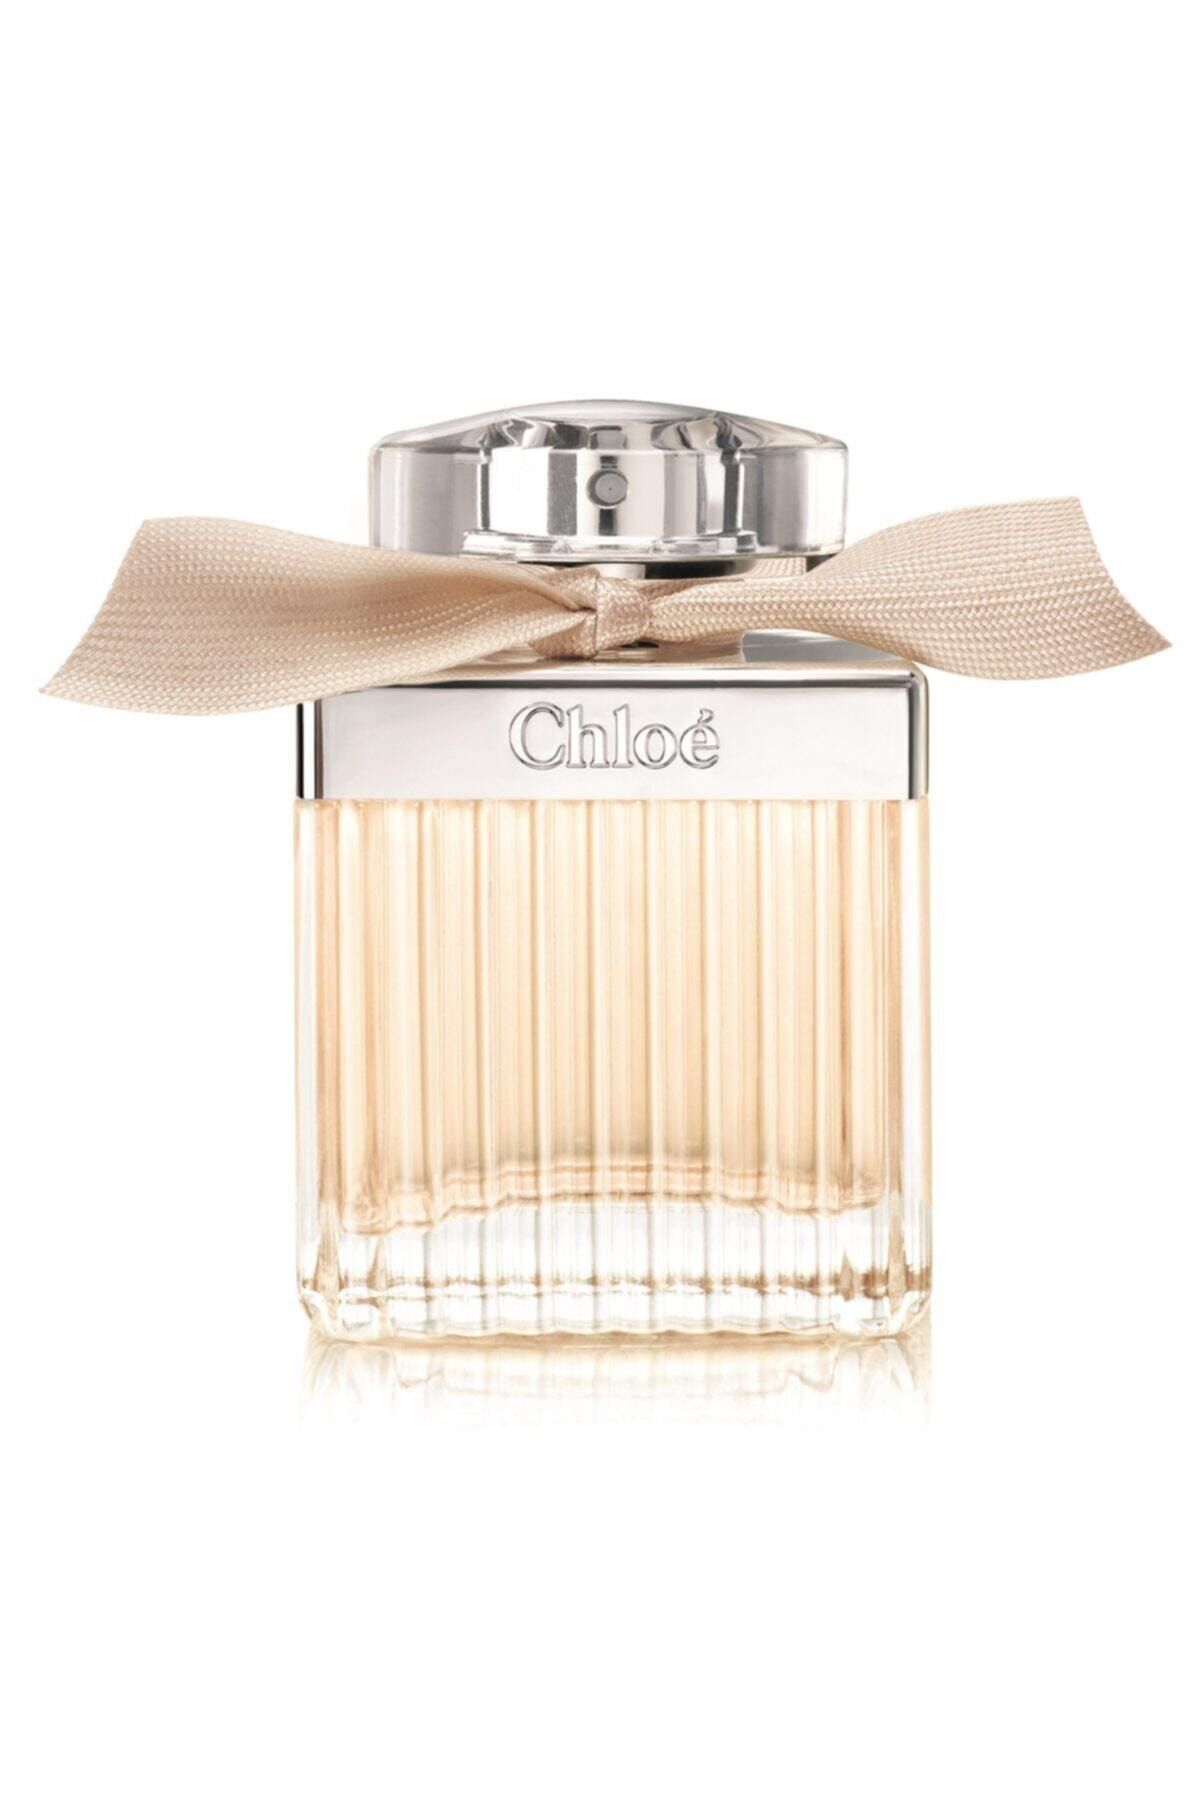 CHLOE Signature Edp 75 ml Kadın Parfümü Fiyatı, Yorumları - Trendyol